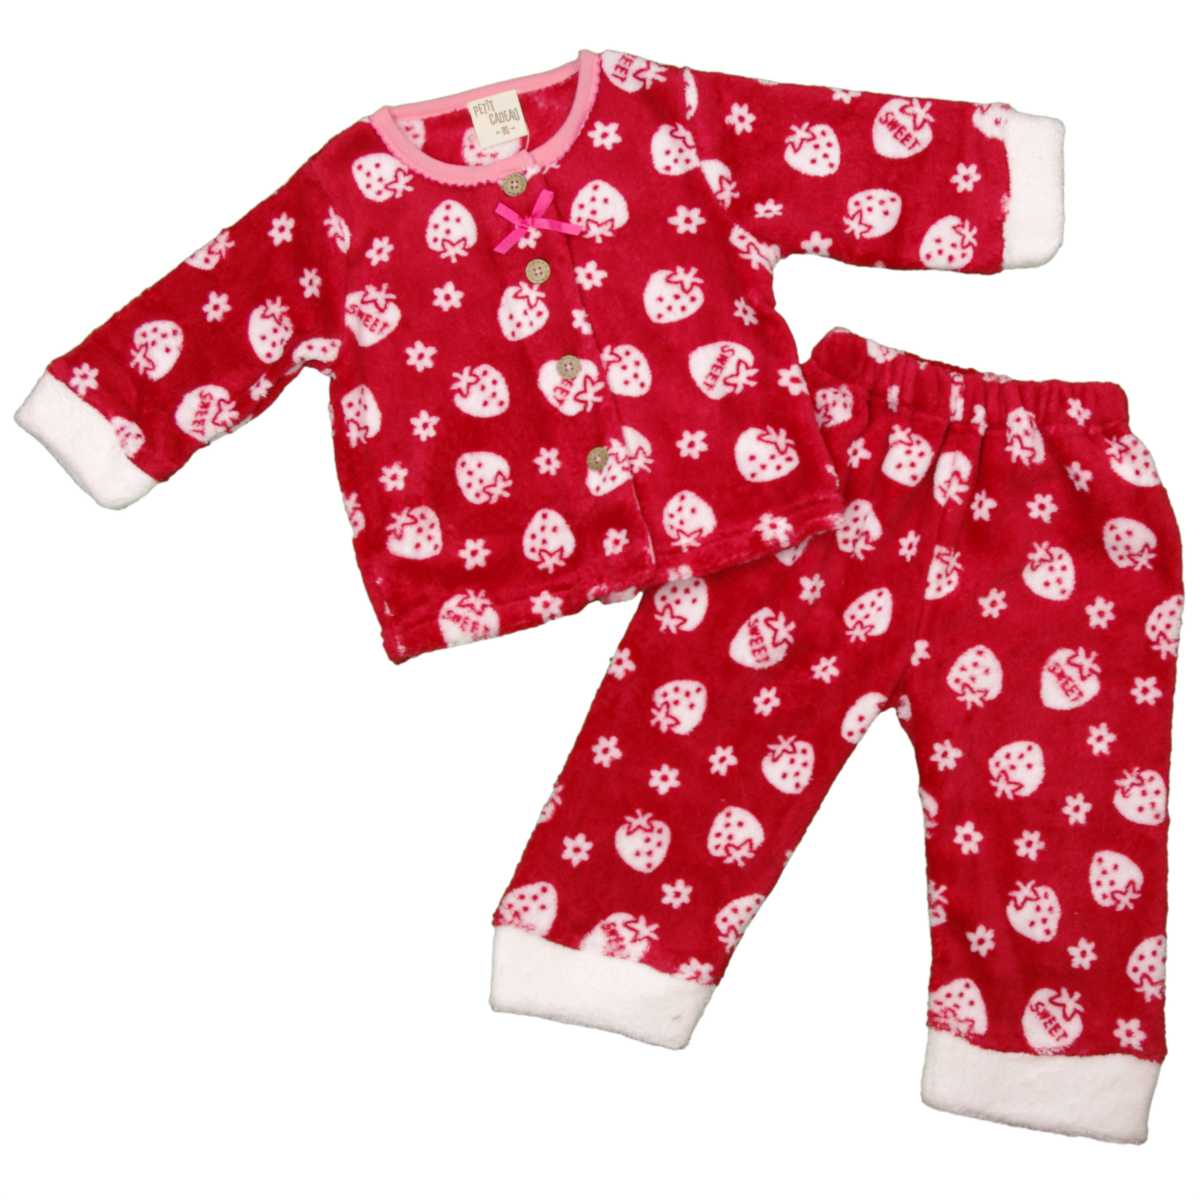 ガールズ ・ベビー ・パジャマ[PETIT CADEAU]マイクロボアパジャマ・長袖上下セット・苺とお花・イチゴ柄・寝間着・女の子・女児